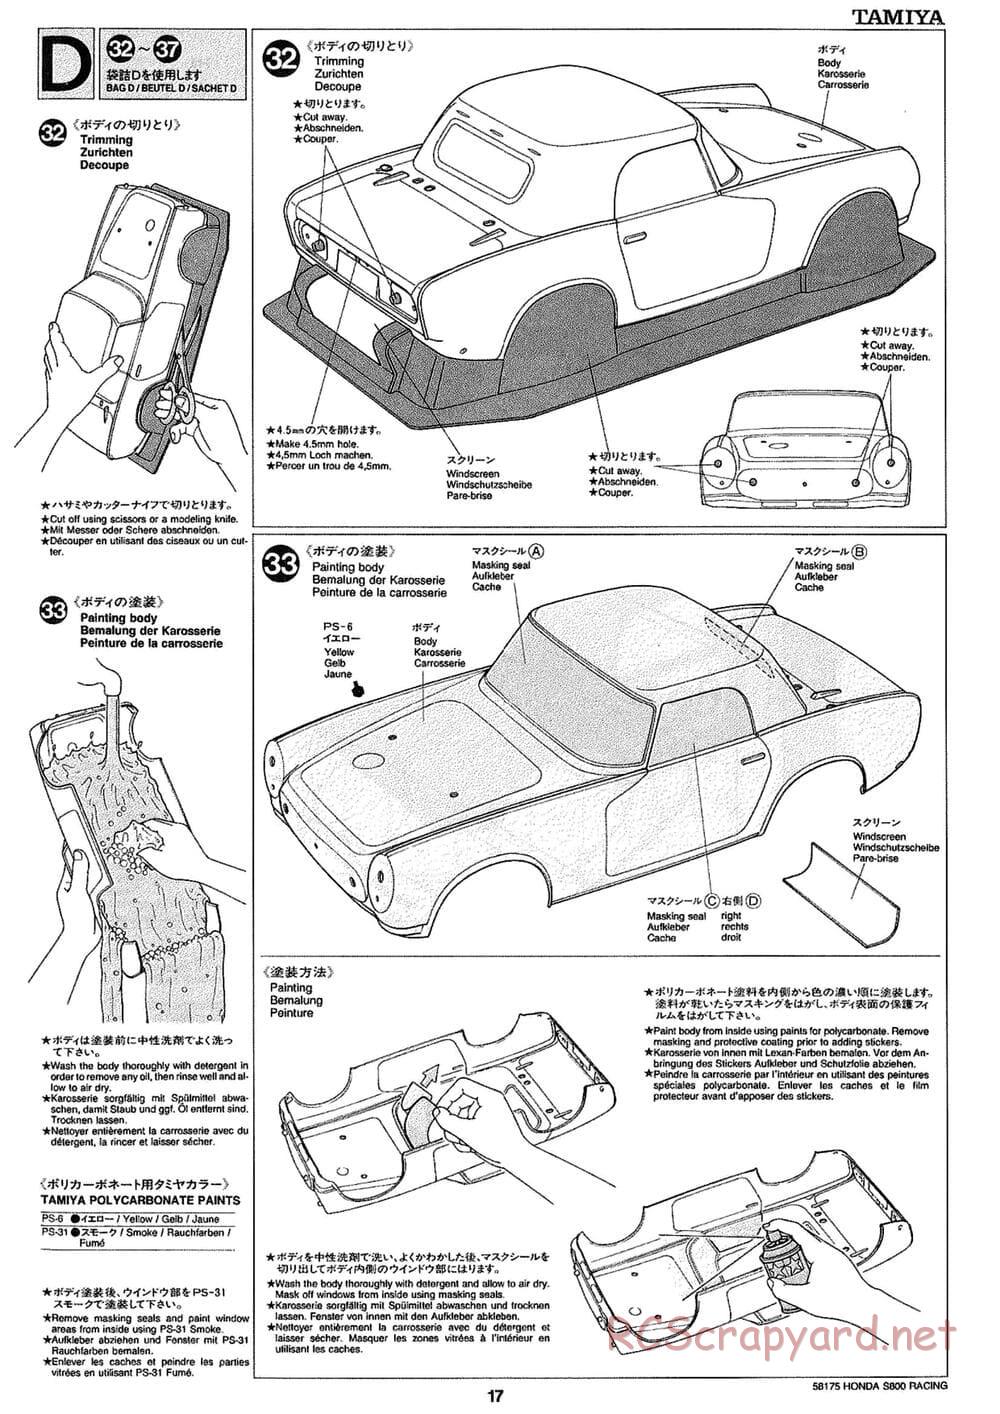 Tamiya - Honda S800 Racing - M02 Chassis - Manual - Page 17